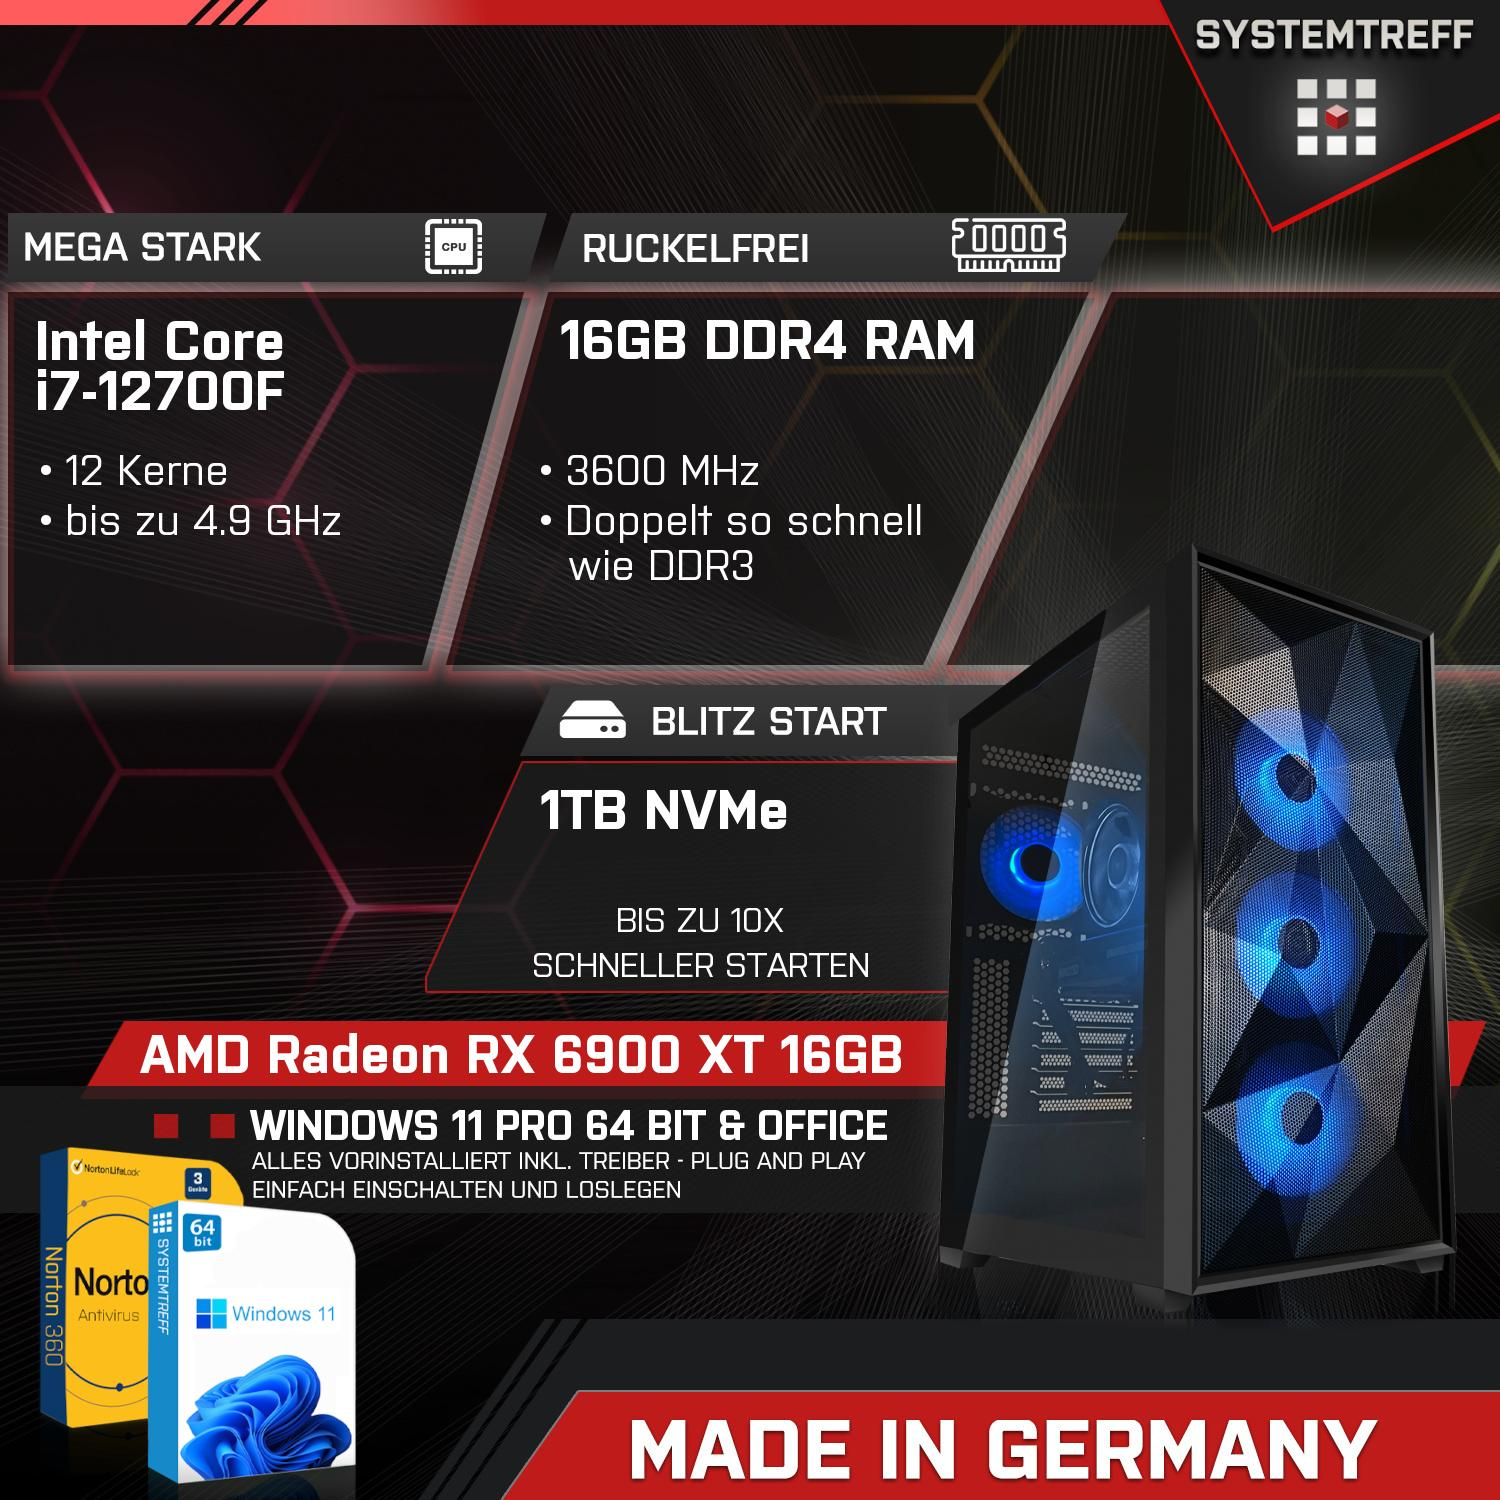 SYSTEMTREFF Gaming Komplett Radeon Komplett 1000 RAM, 6900 GB GB GDDR6, RX i7-12700F, Intel XT Core 16 Prozessor, mSSD, AMD GB 16 PC mit 16GB i7-12700F